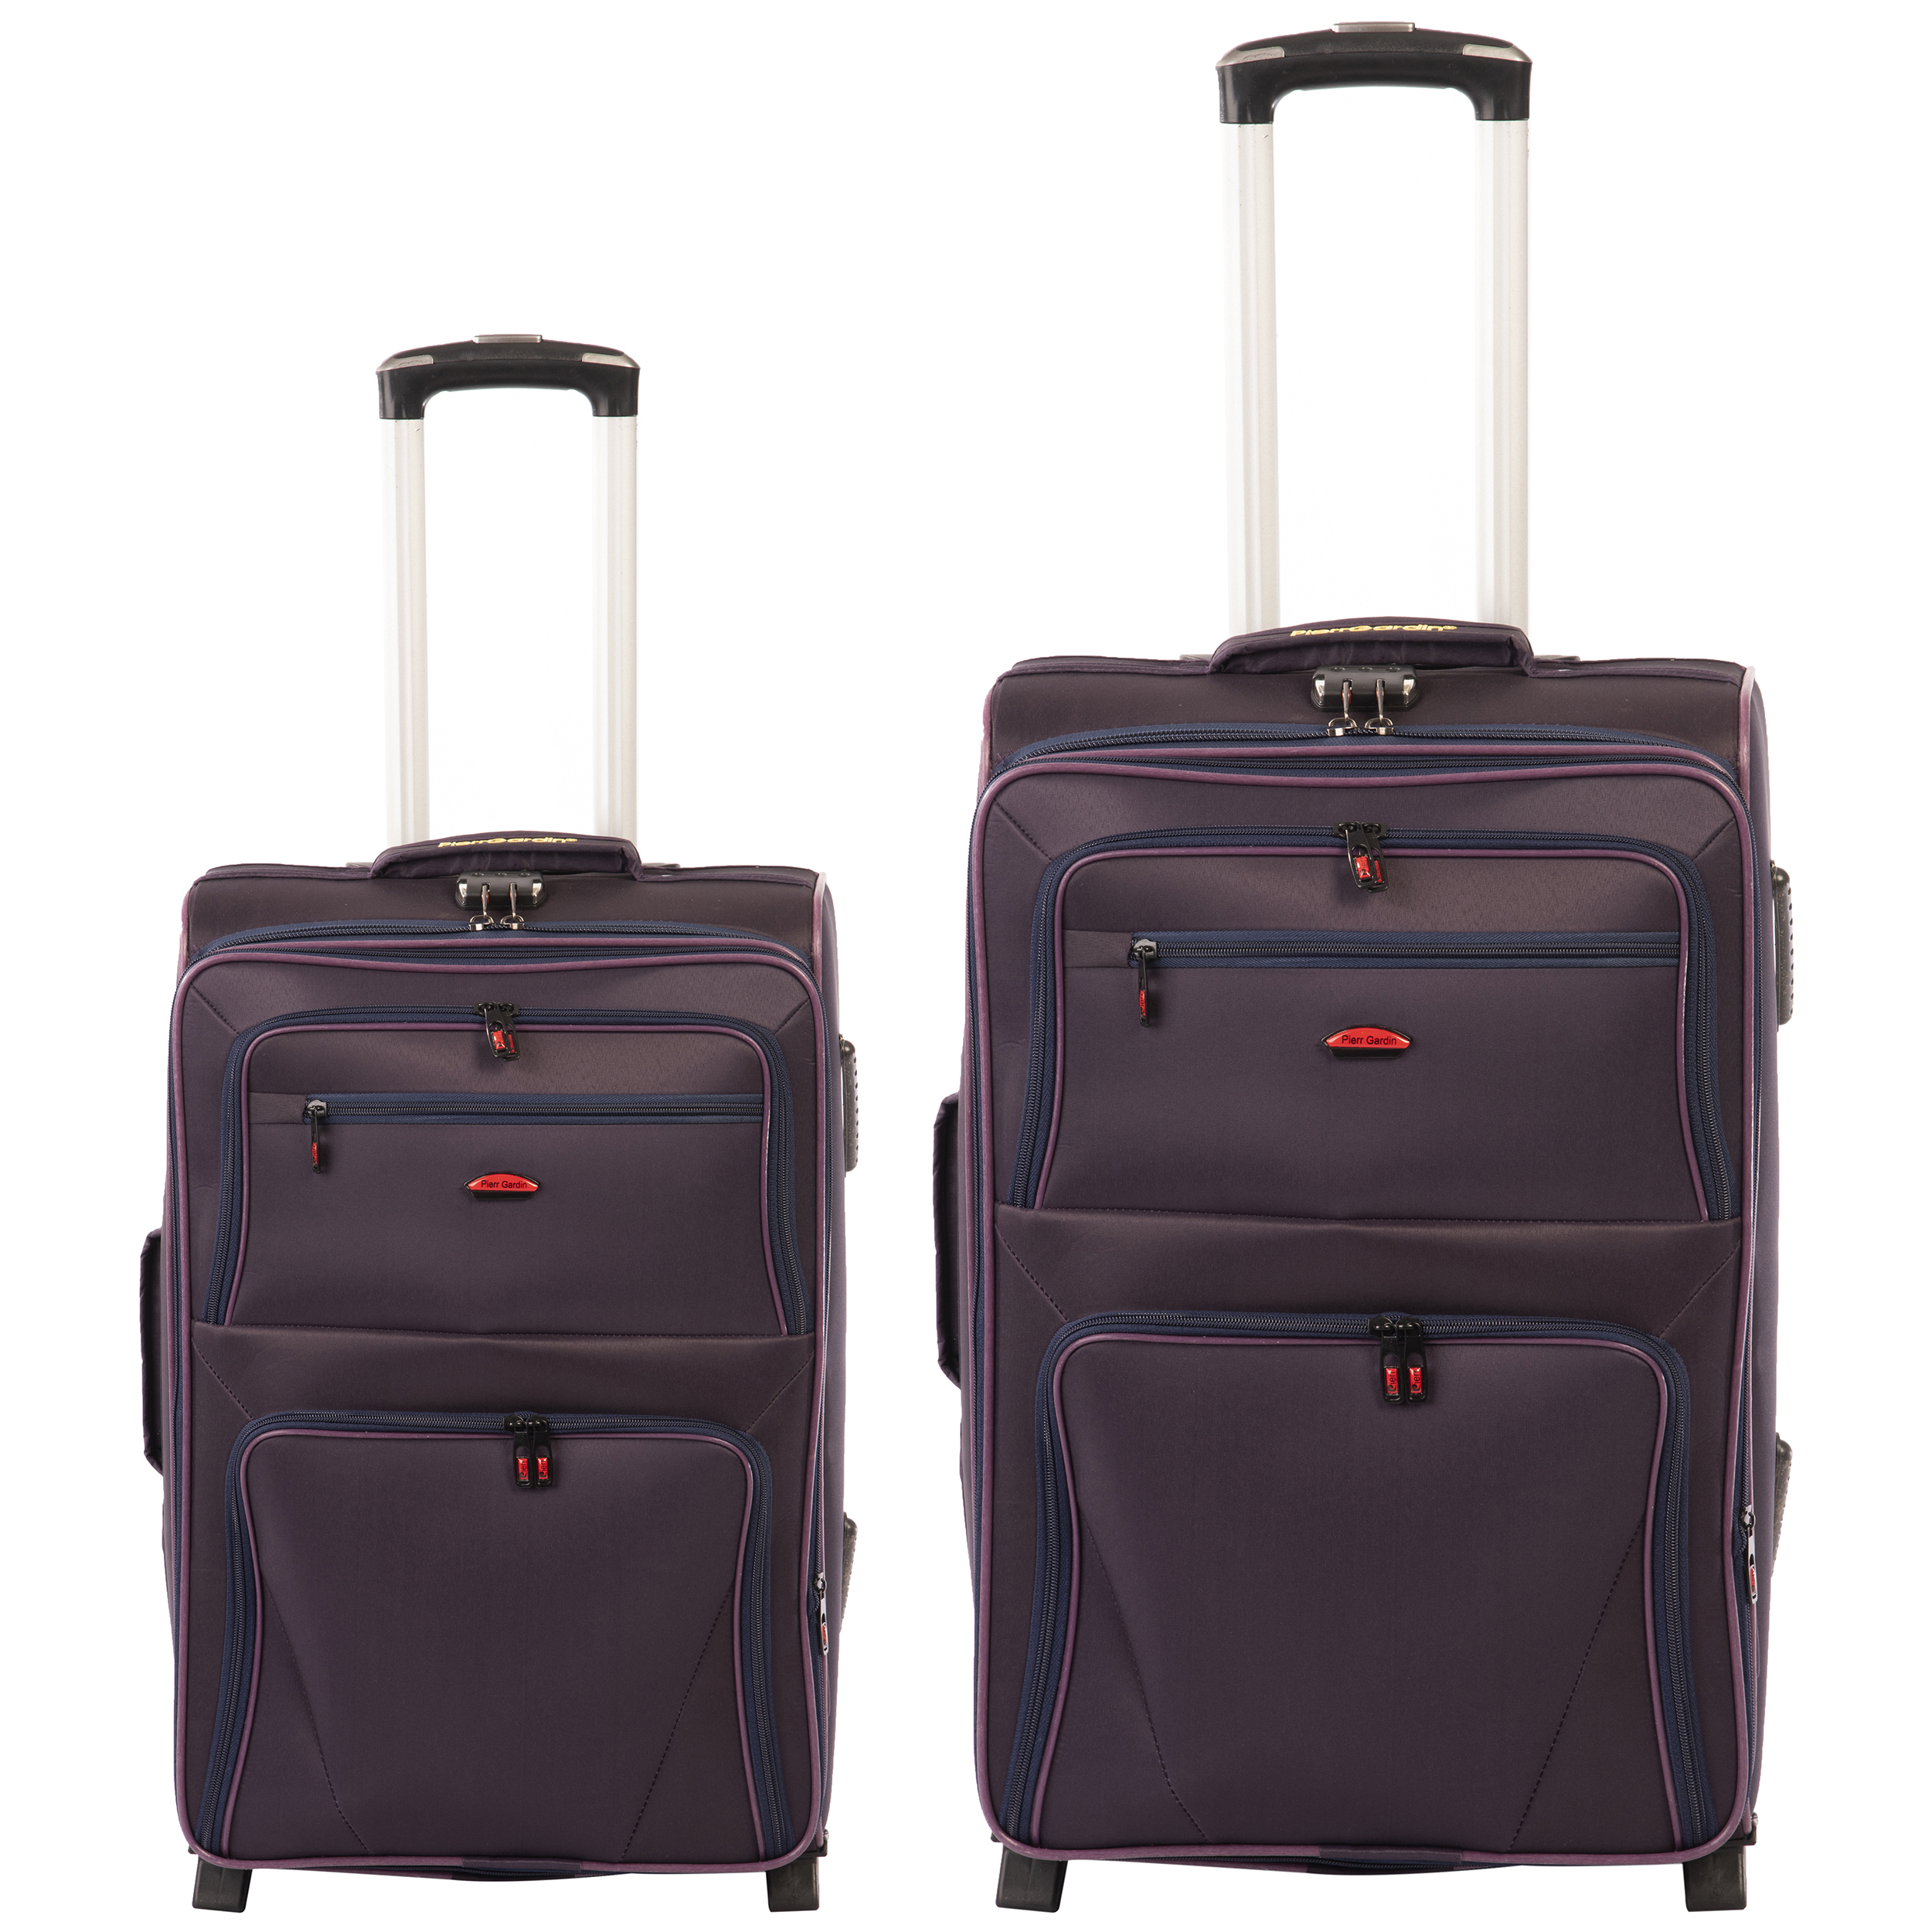 مجموعه دو عددی چمدان مدلSed44